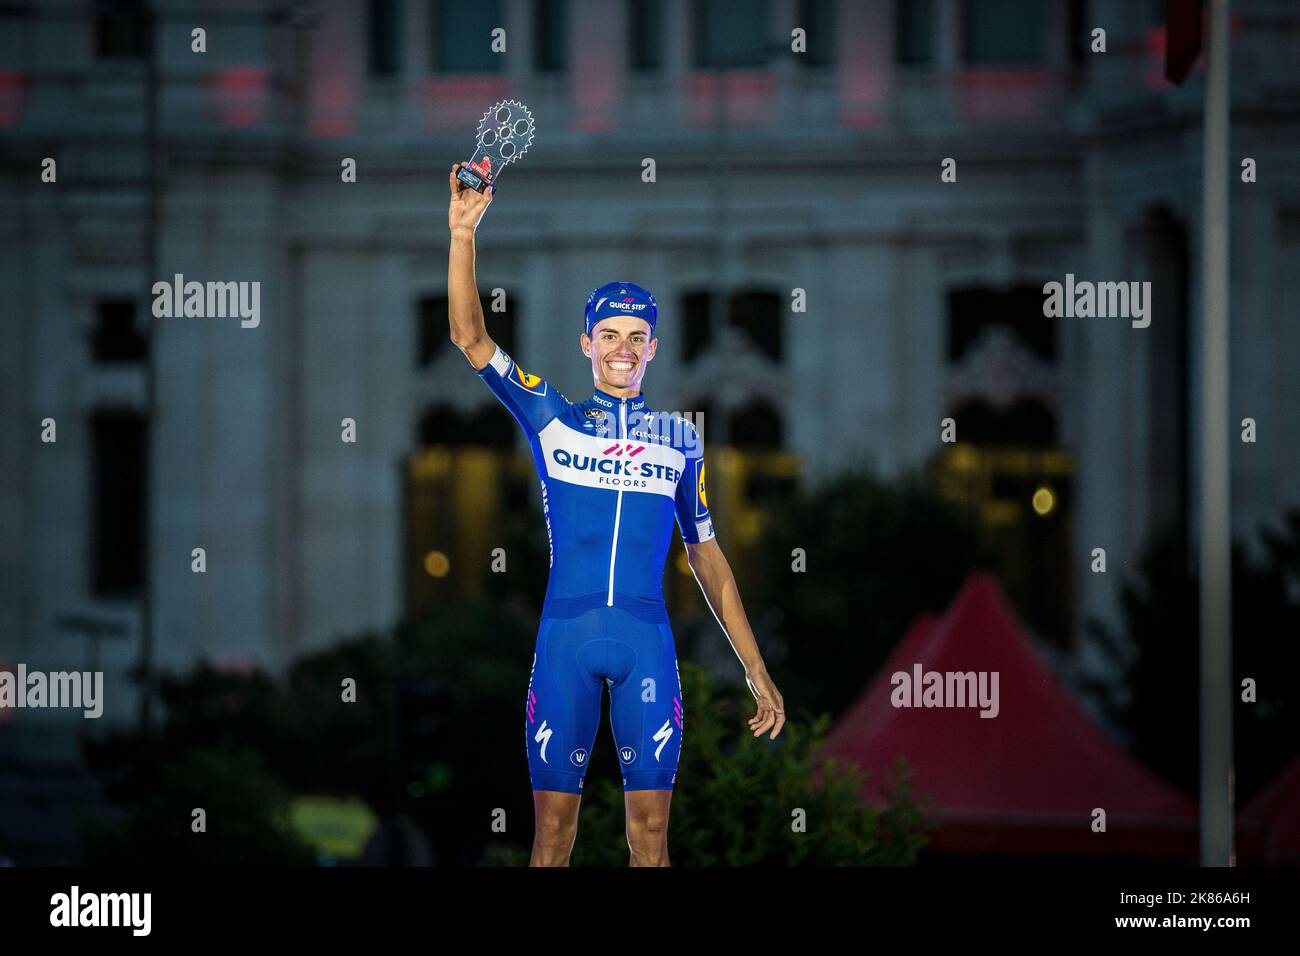 Quick Step Floors' Enric Mas vince il premio Young Rider alla conclusione della Vuelta a Espana (Tour di Spagna) 2018 a Madrid, Spagna, il 16 settembre 2018. Foto Stock